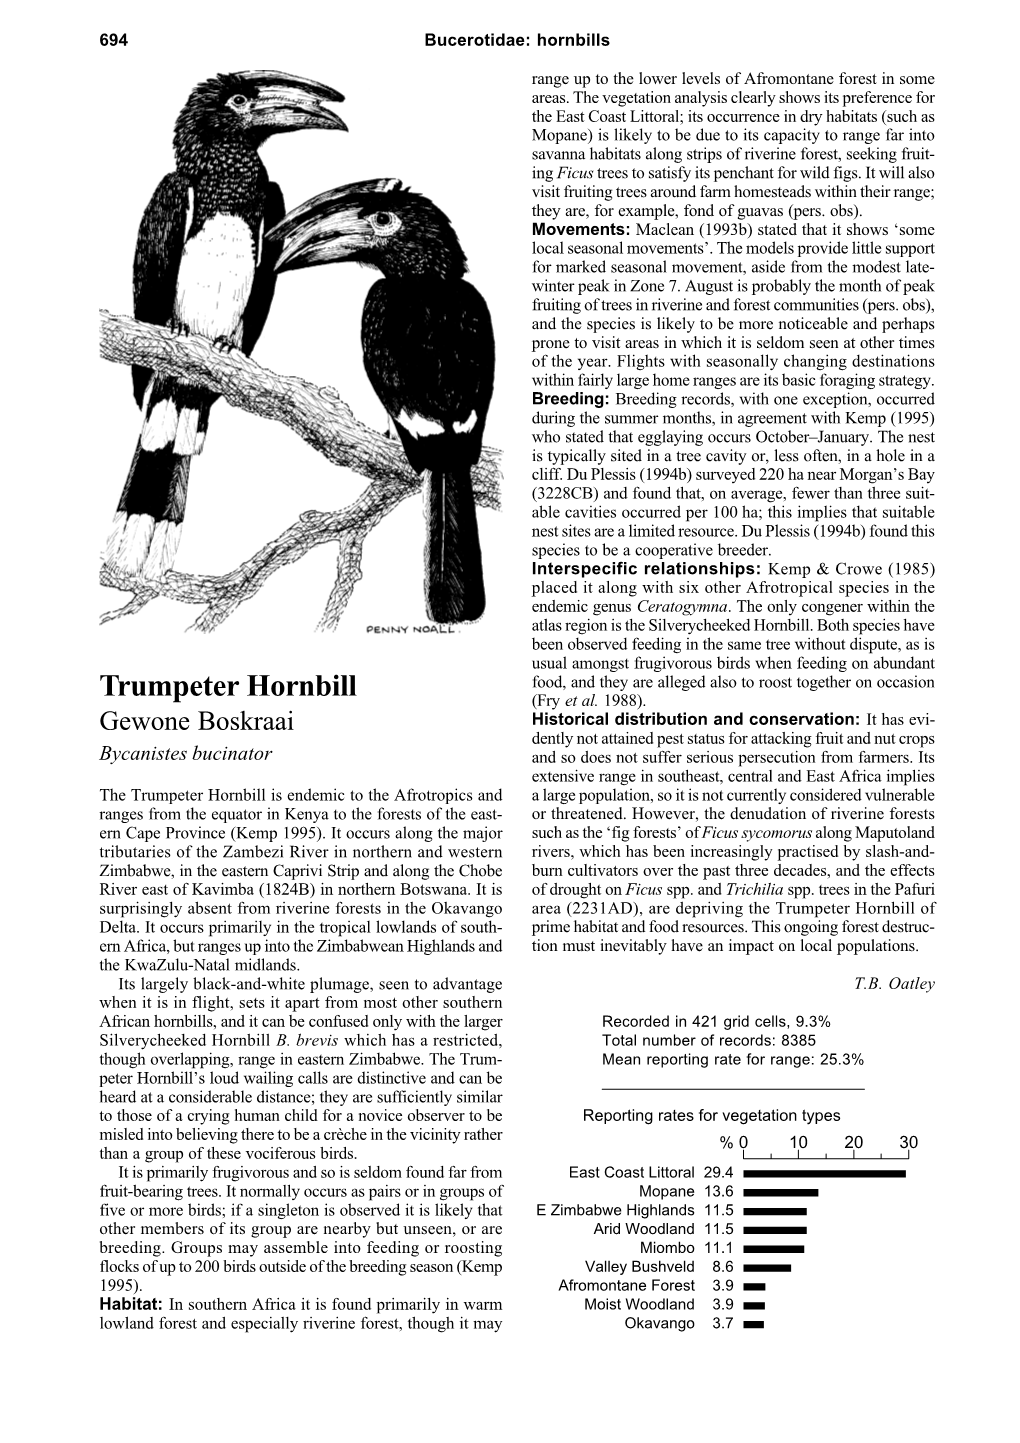 Trumpeter Hornbill (Fry Et Al